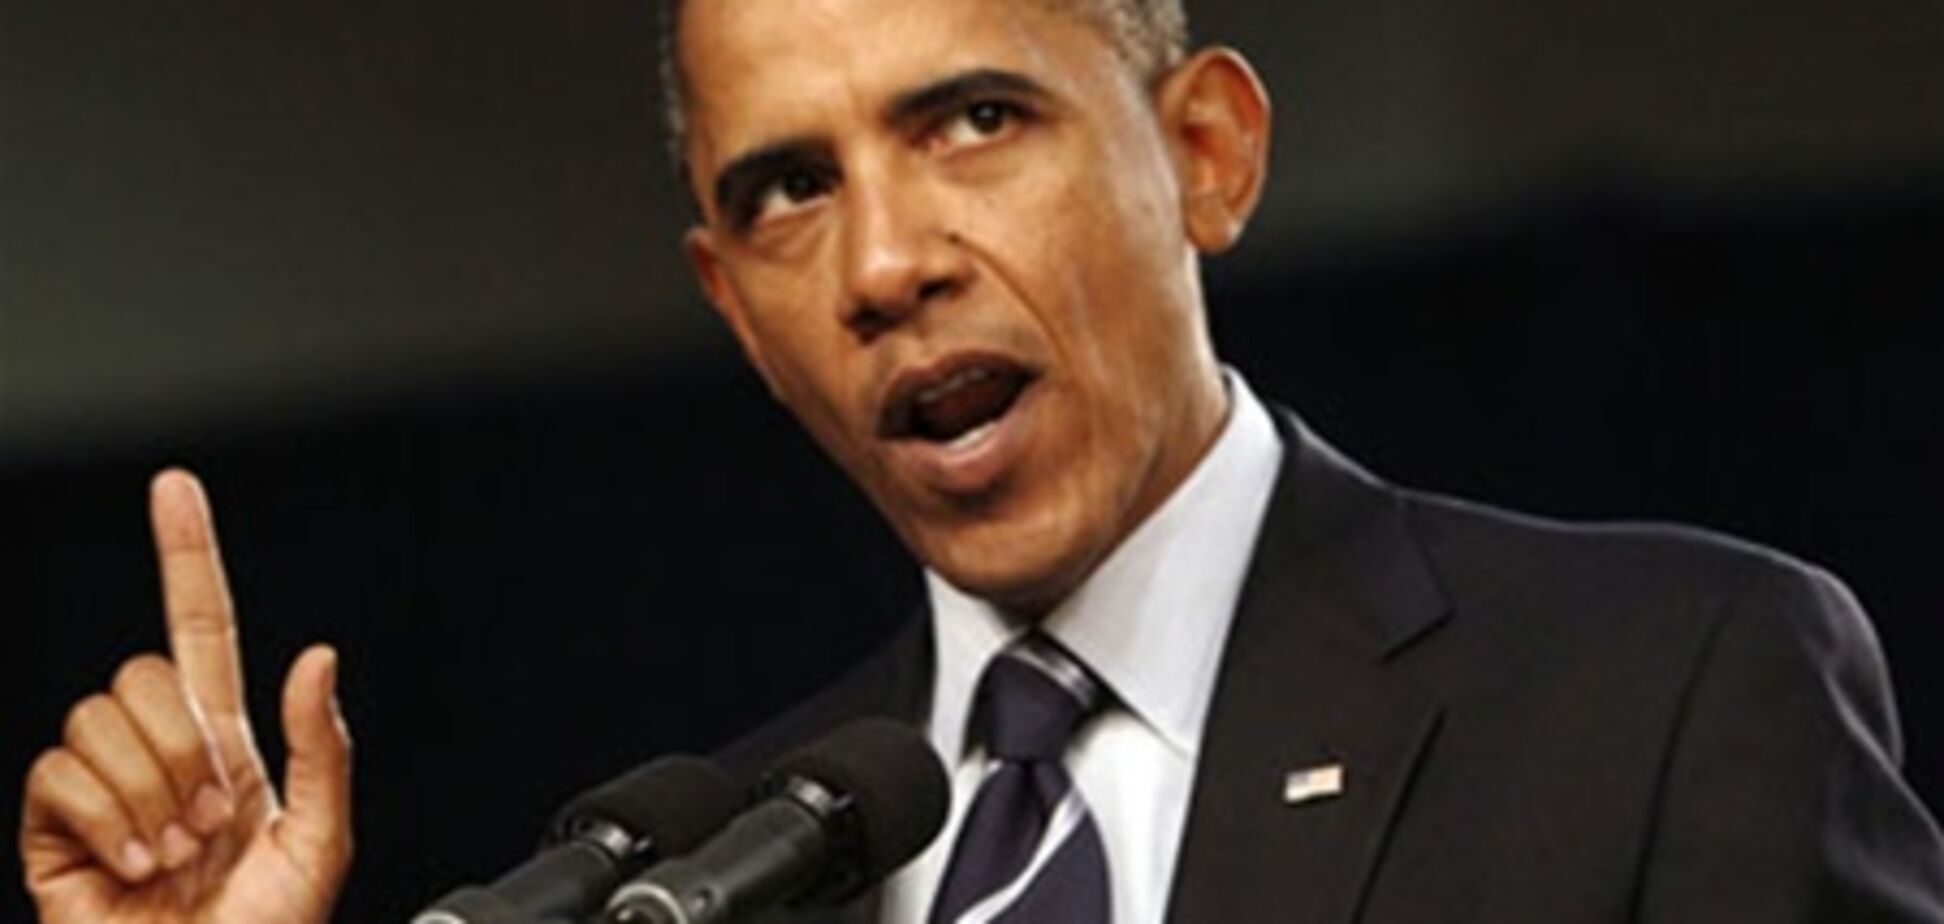 Сенат запретил Обаме поднимать потолок госдолга США